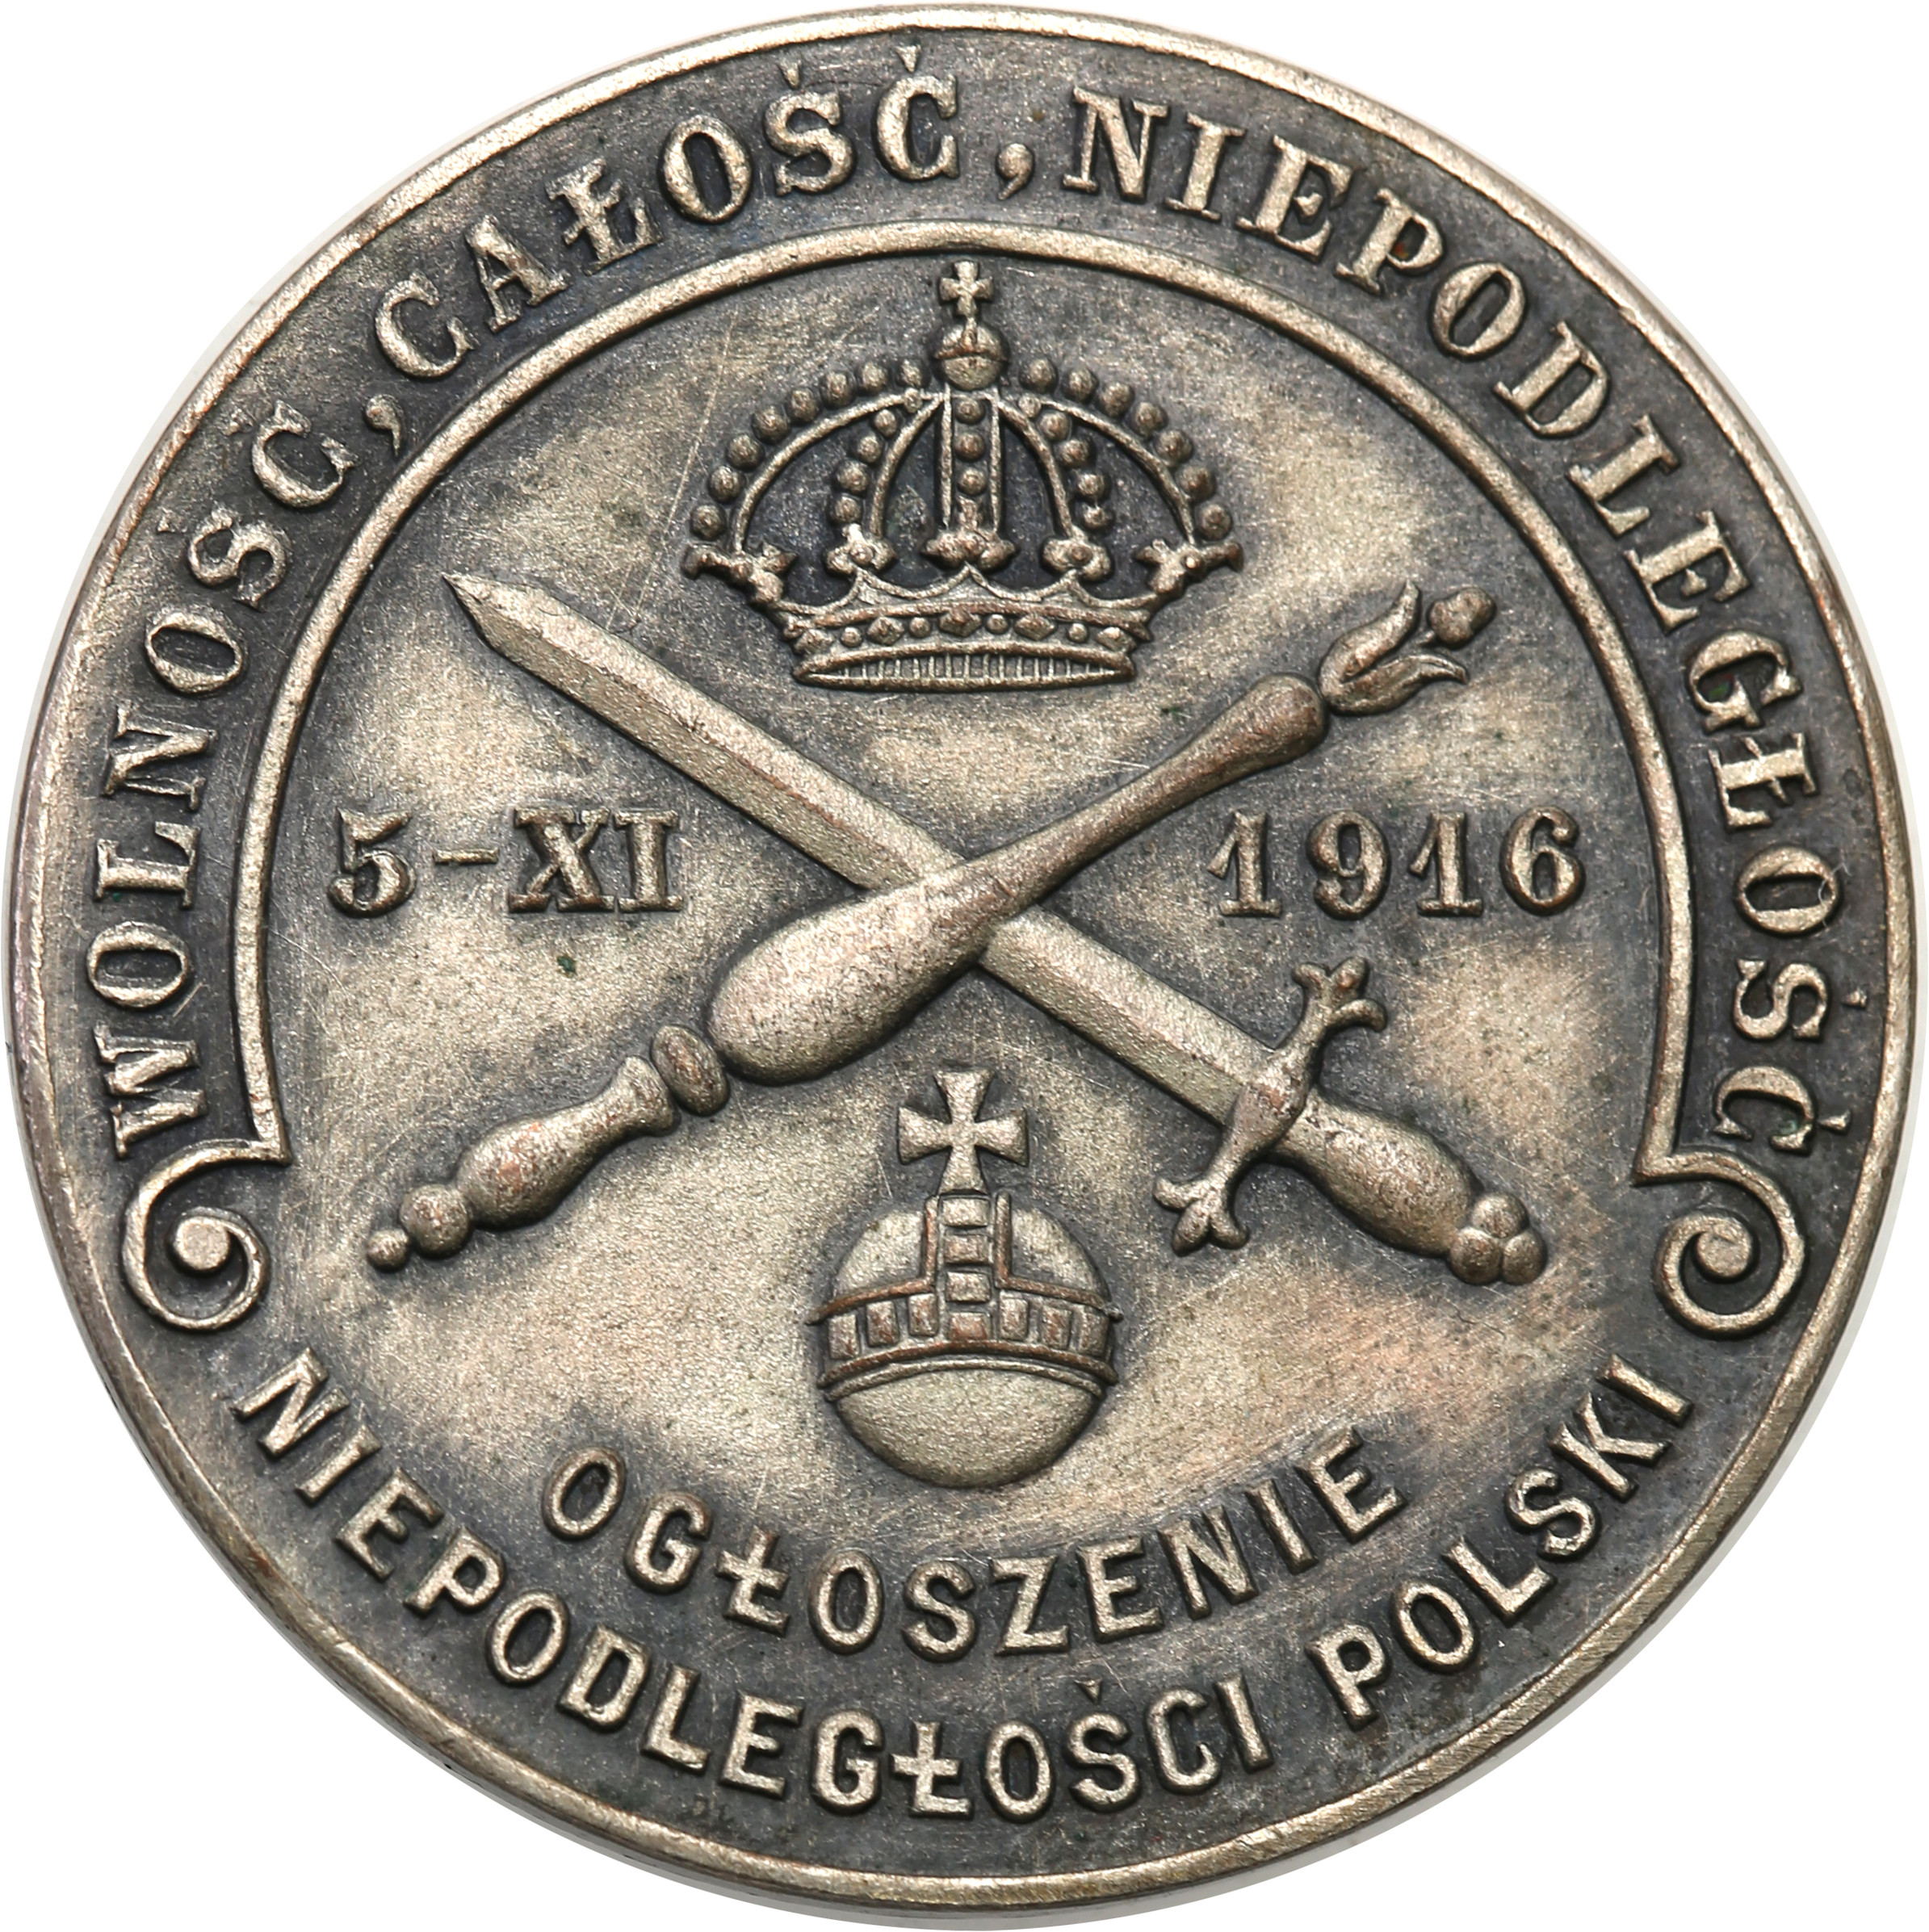 Polska, Polska pod zaborami. Medal 1916 ogłoszenie niepodległości Polski, brąz srebrzony